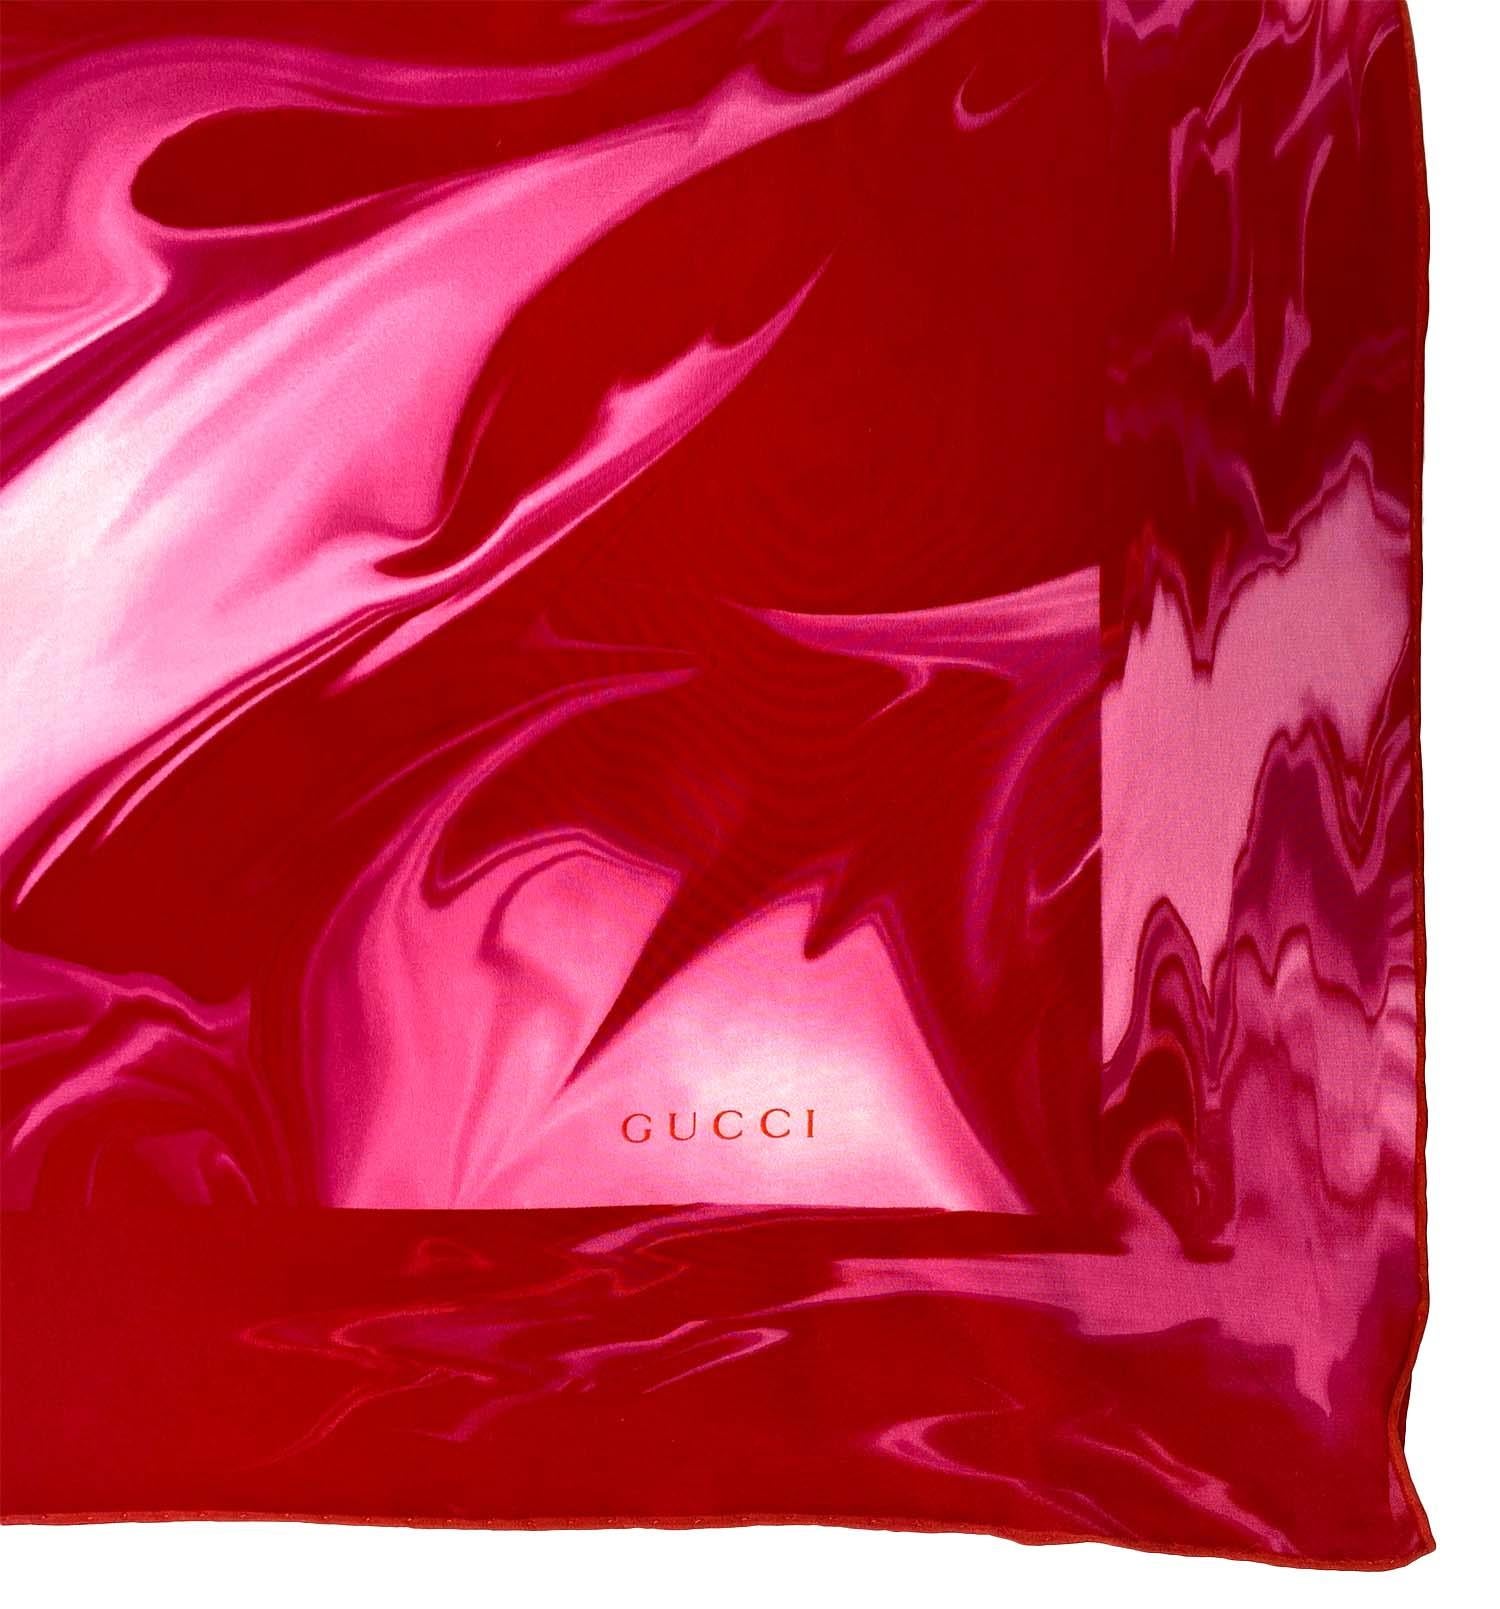 S/S 2001 Gucci by Tom Ford Écharpe carrée en soie rose imprimée lave Excellent état - En vente à West Hollywood, CA